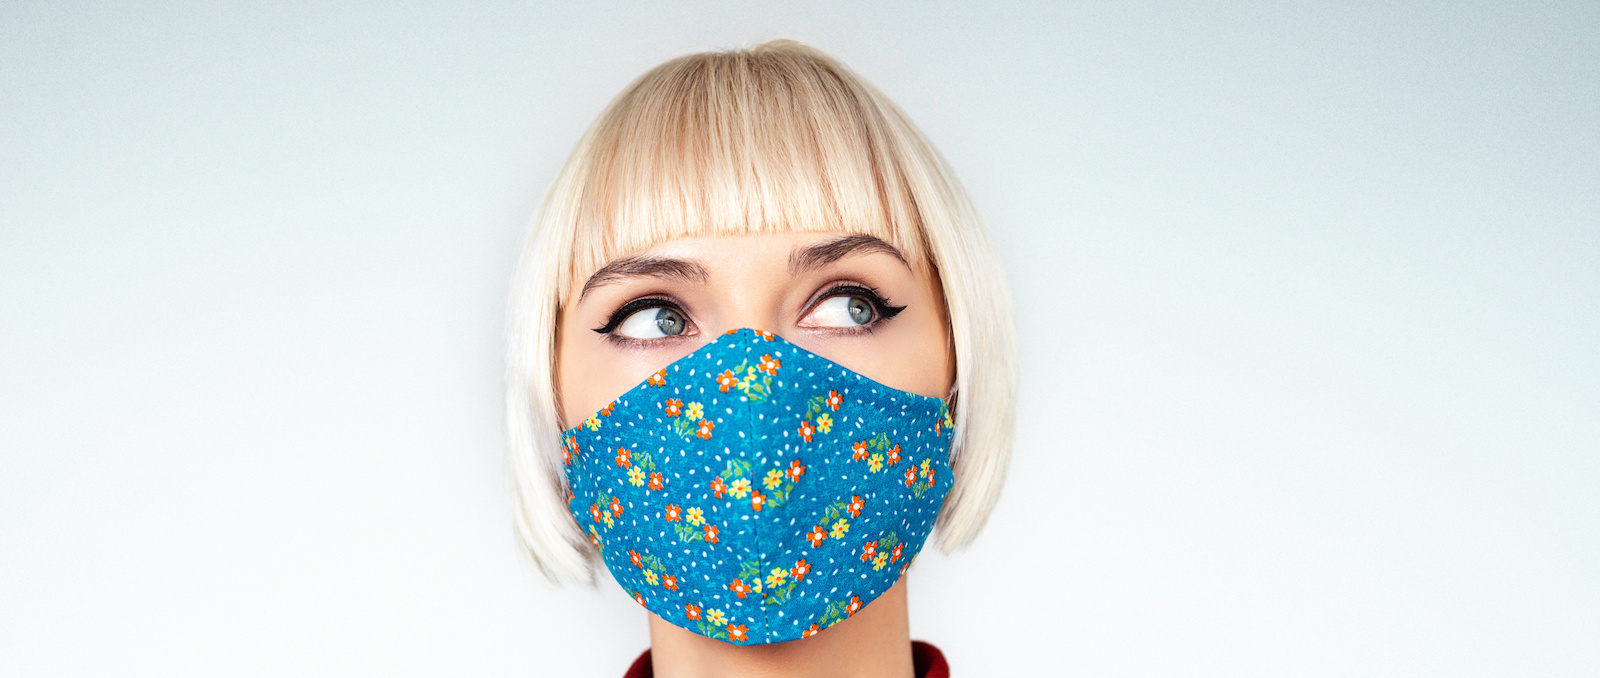 Donna pensosa e premurosa che indossa una maschera facciale fatta a mano durante la quarantena dell'epidemia di infezione da coronavirus.